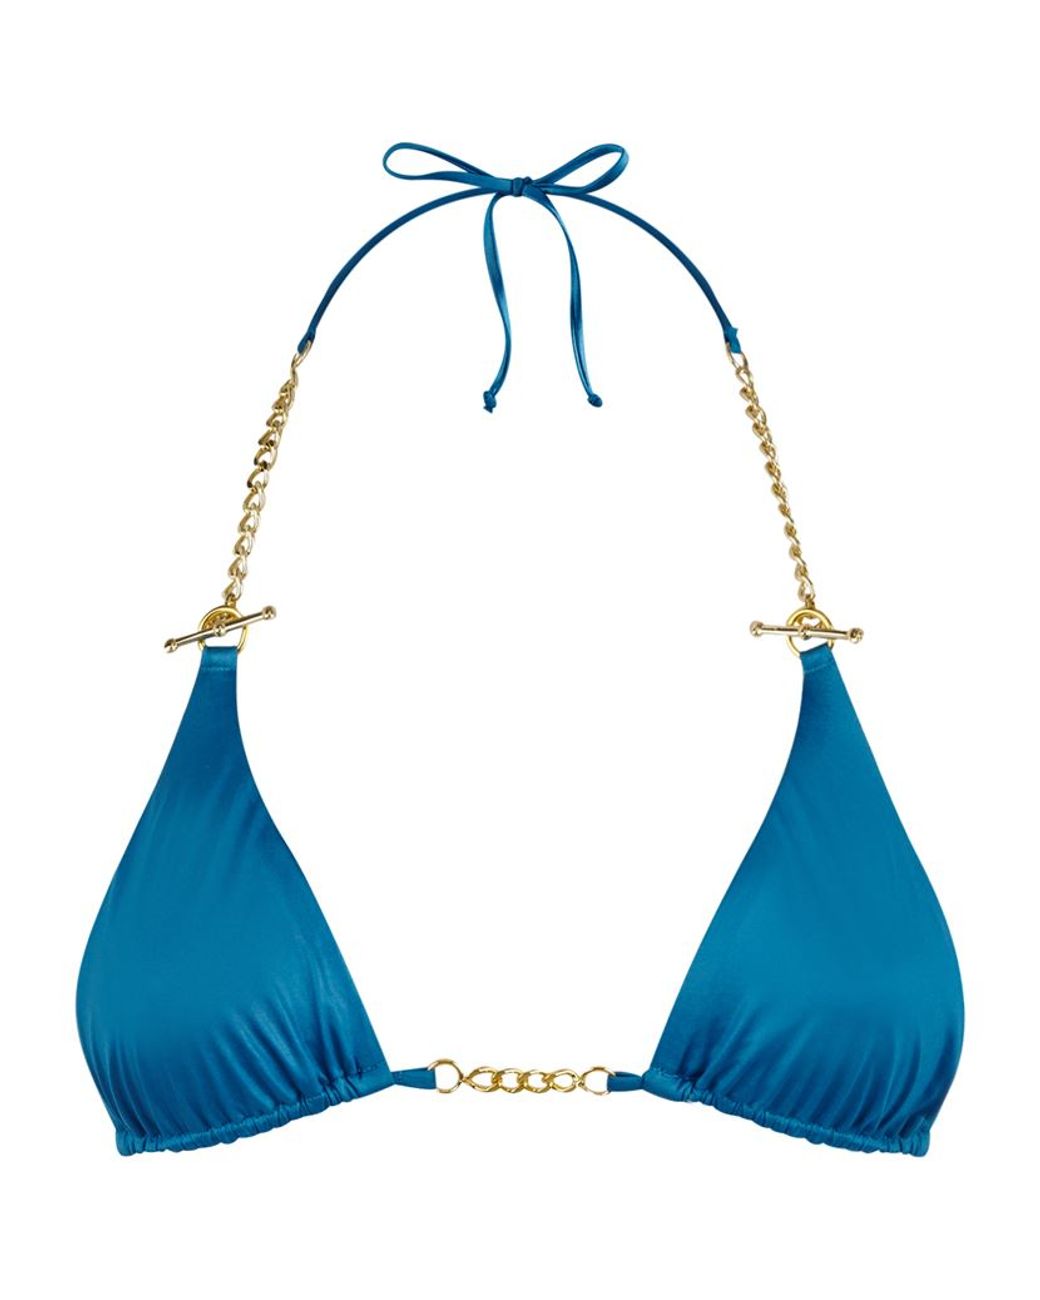 Agent Provocateur Antronella Chain Bikini Top in Blue | Lyst UK